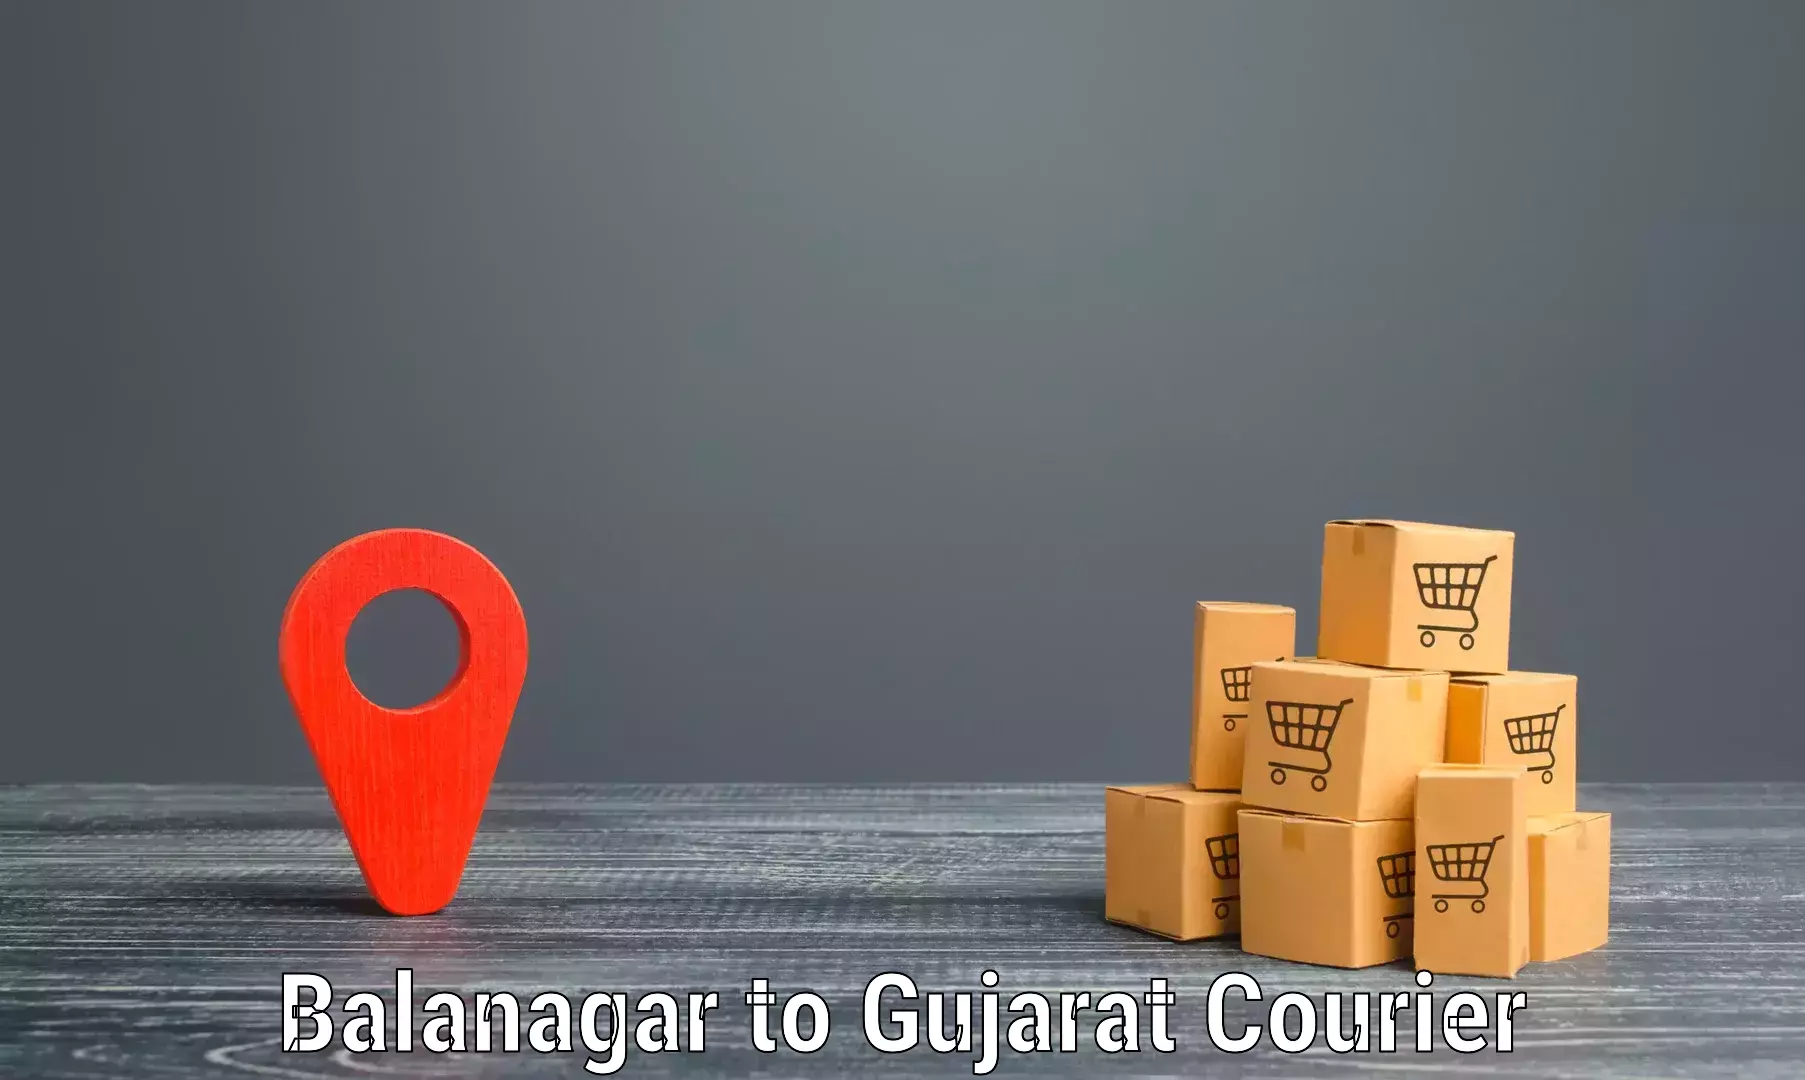 Quality courier services Balanagar to Upleta